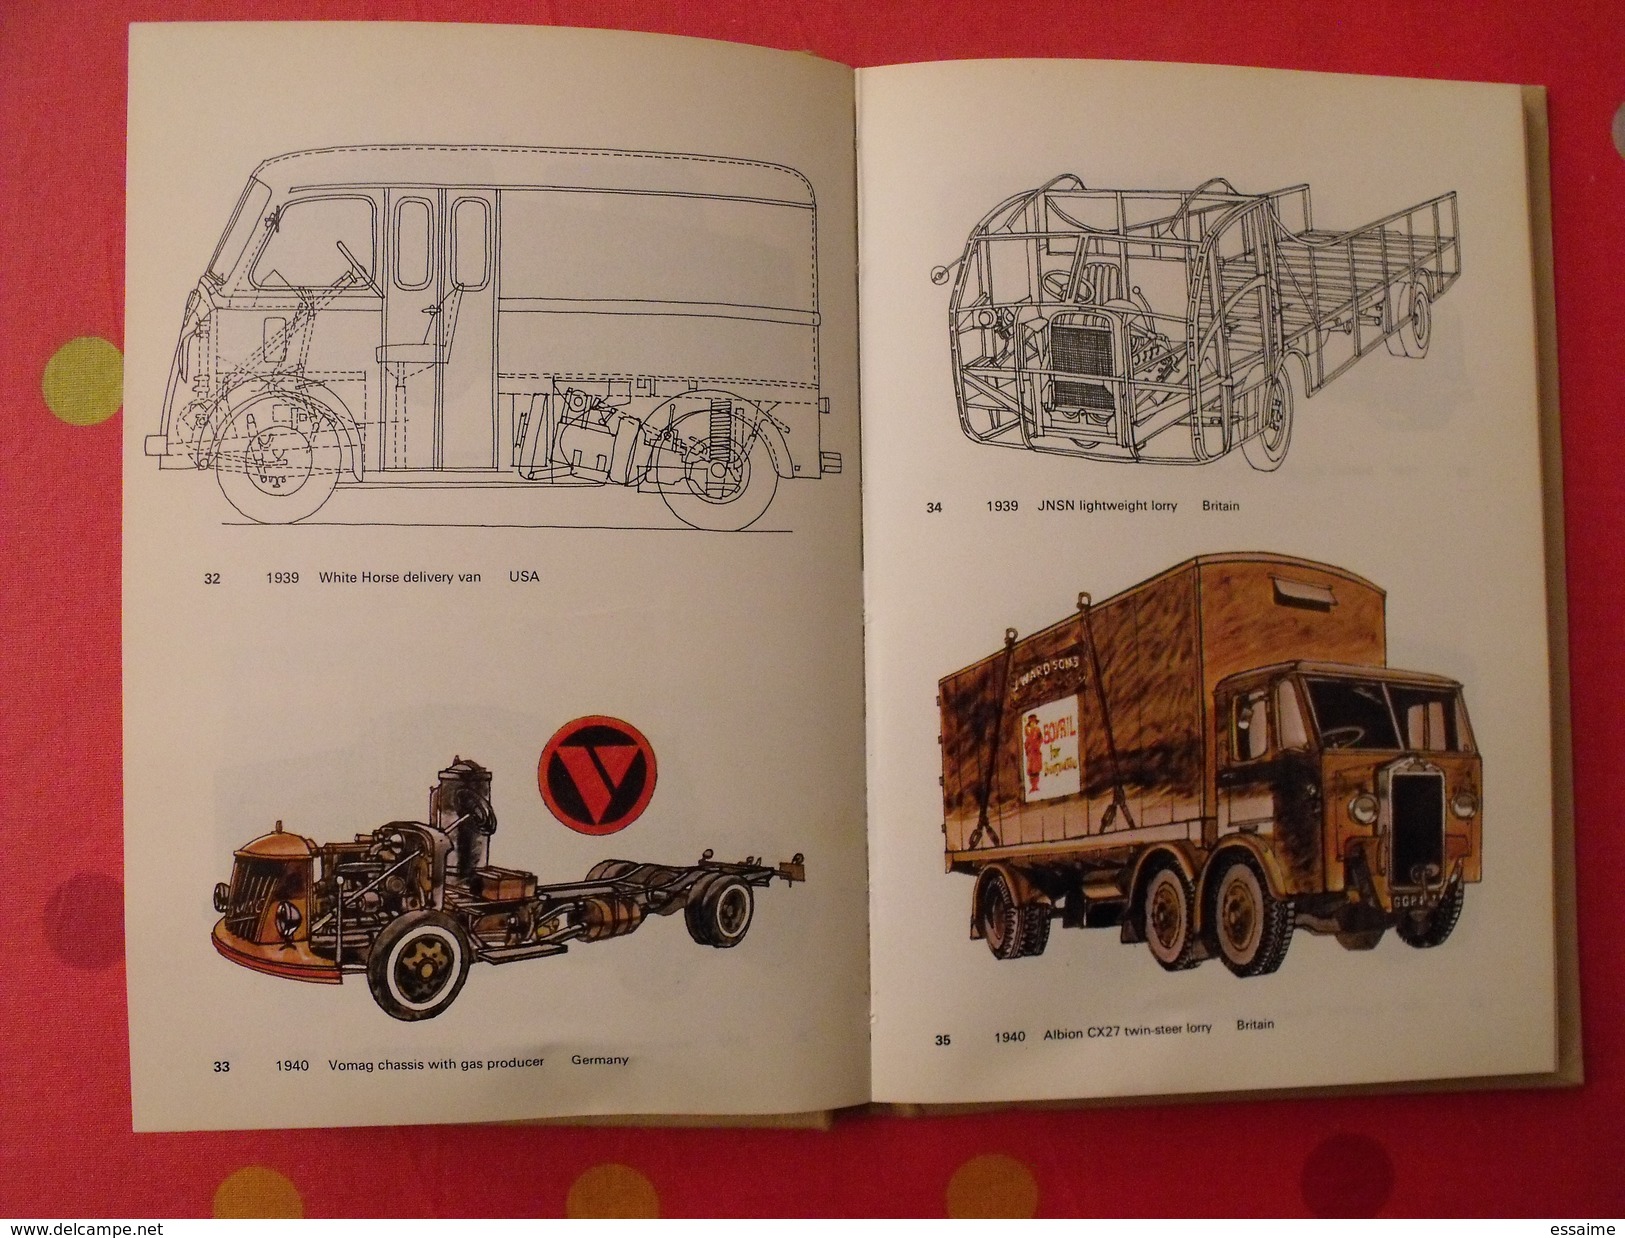 lorries trucks and vans since 1928. camions depuis 1928. Ingram bishop. 1975. en anglais. blandford